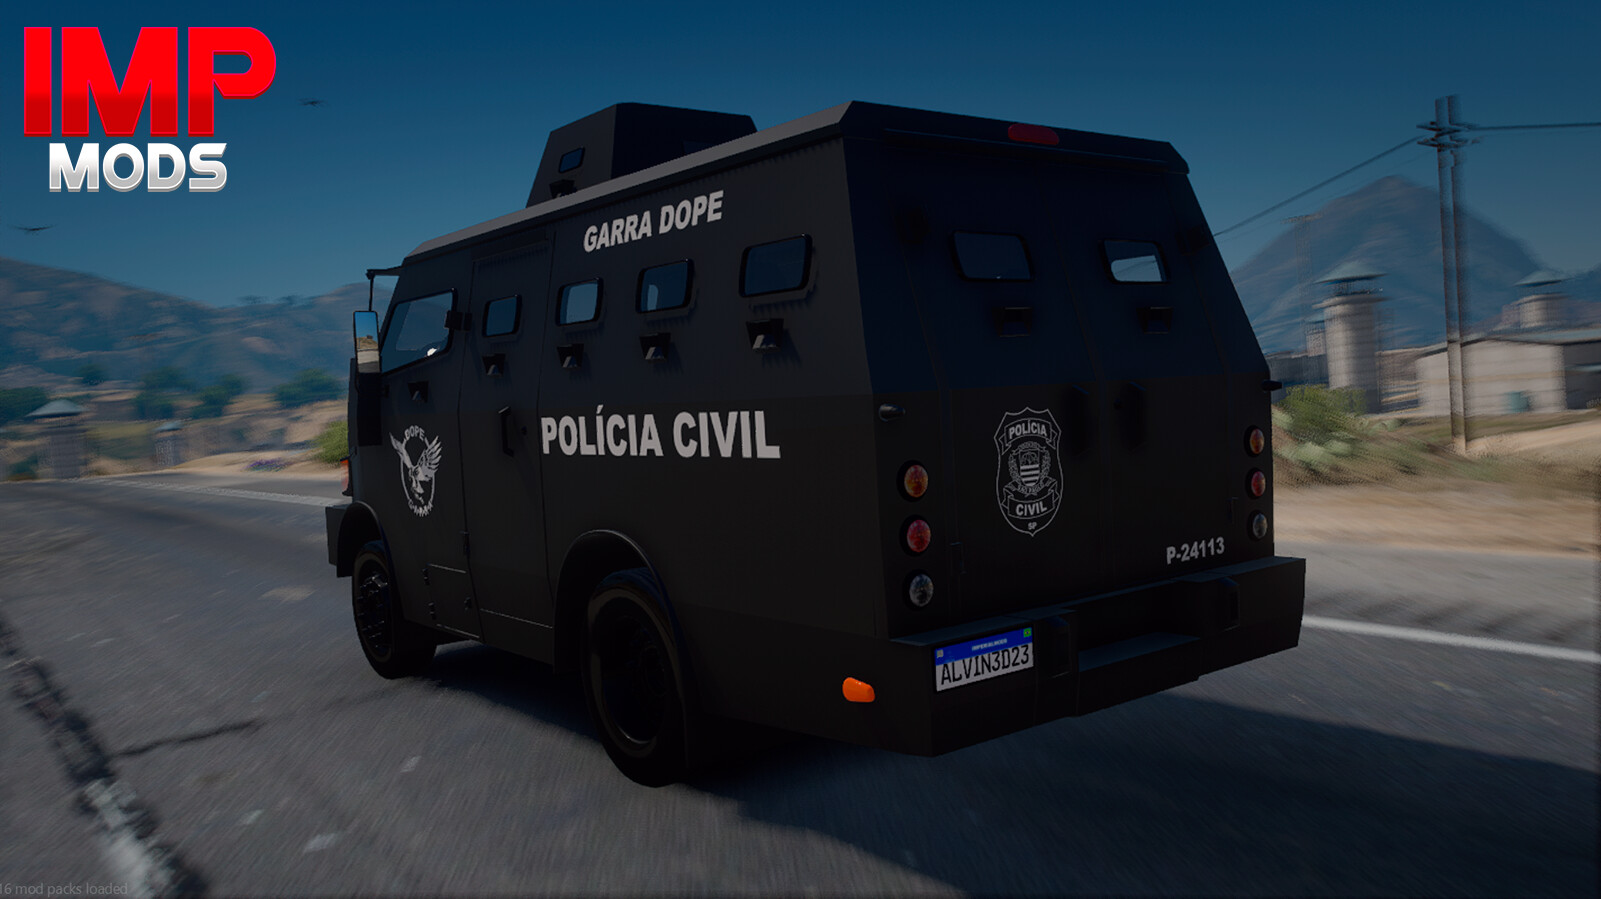 ArtStation - Corolla 2022 POLÍCIA FEDERAL (FIVEM/GTAV)